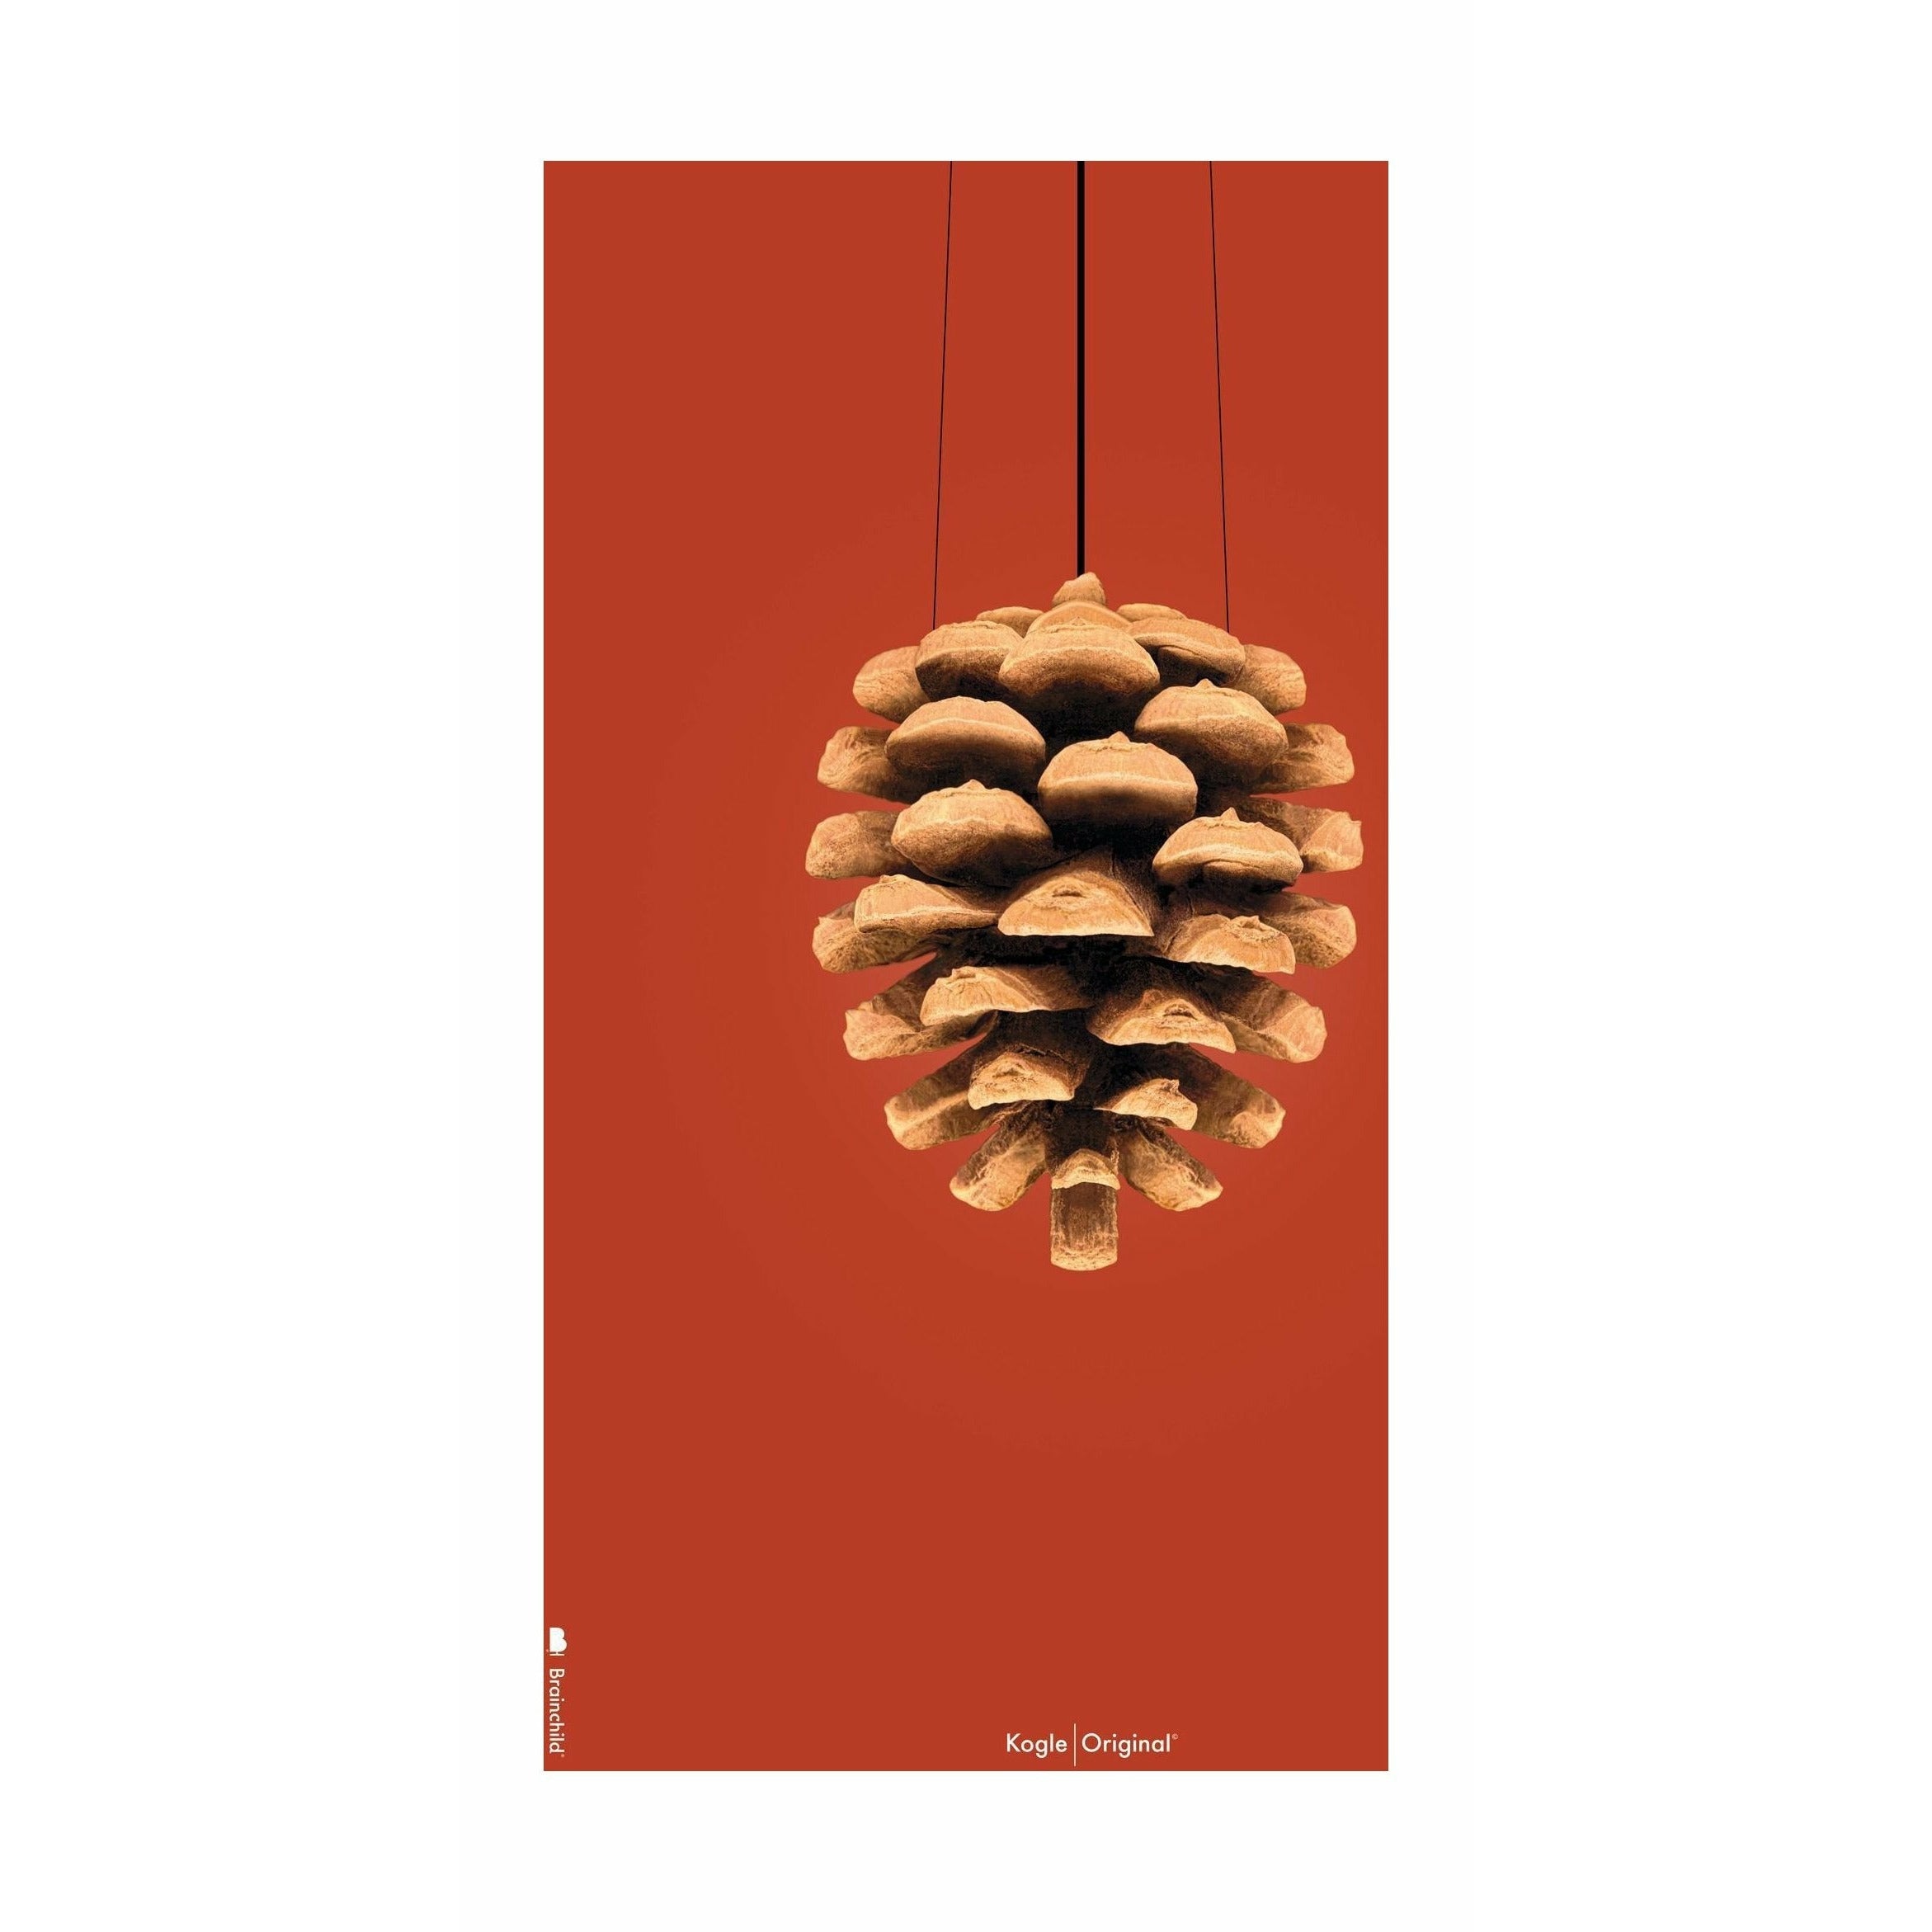 brainchild Pine Cone Classic Poster uden ramme 70 x100 cm, rød baggrund